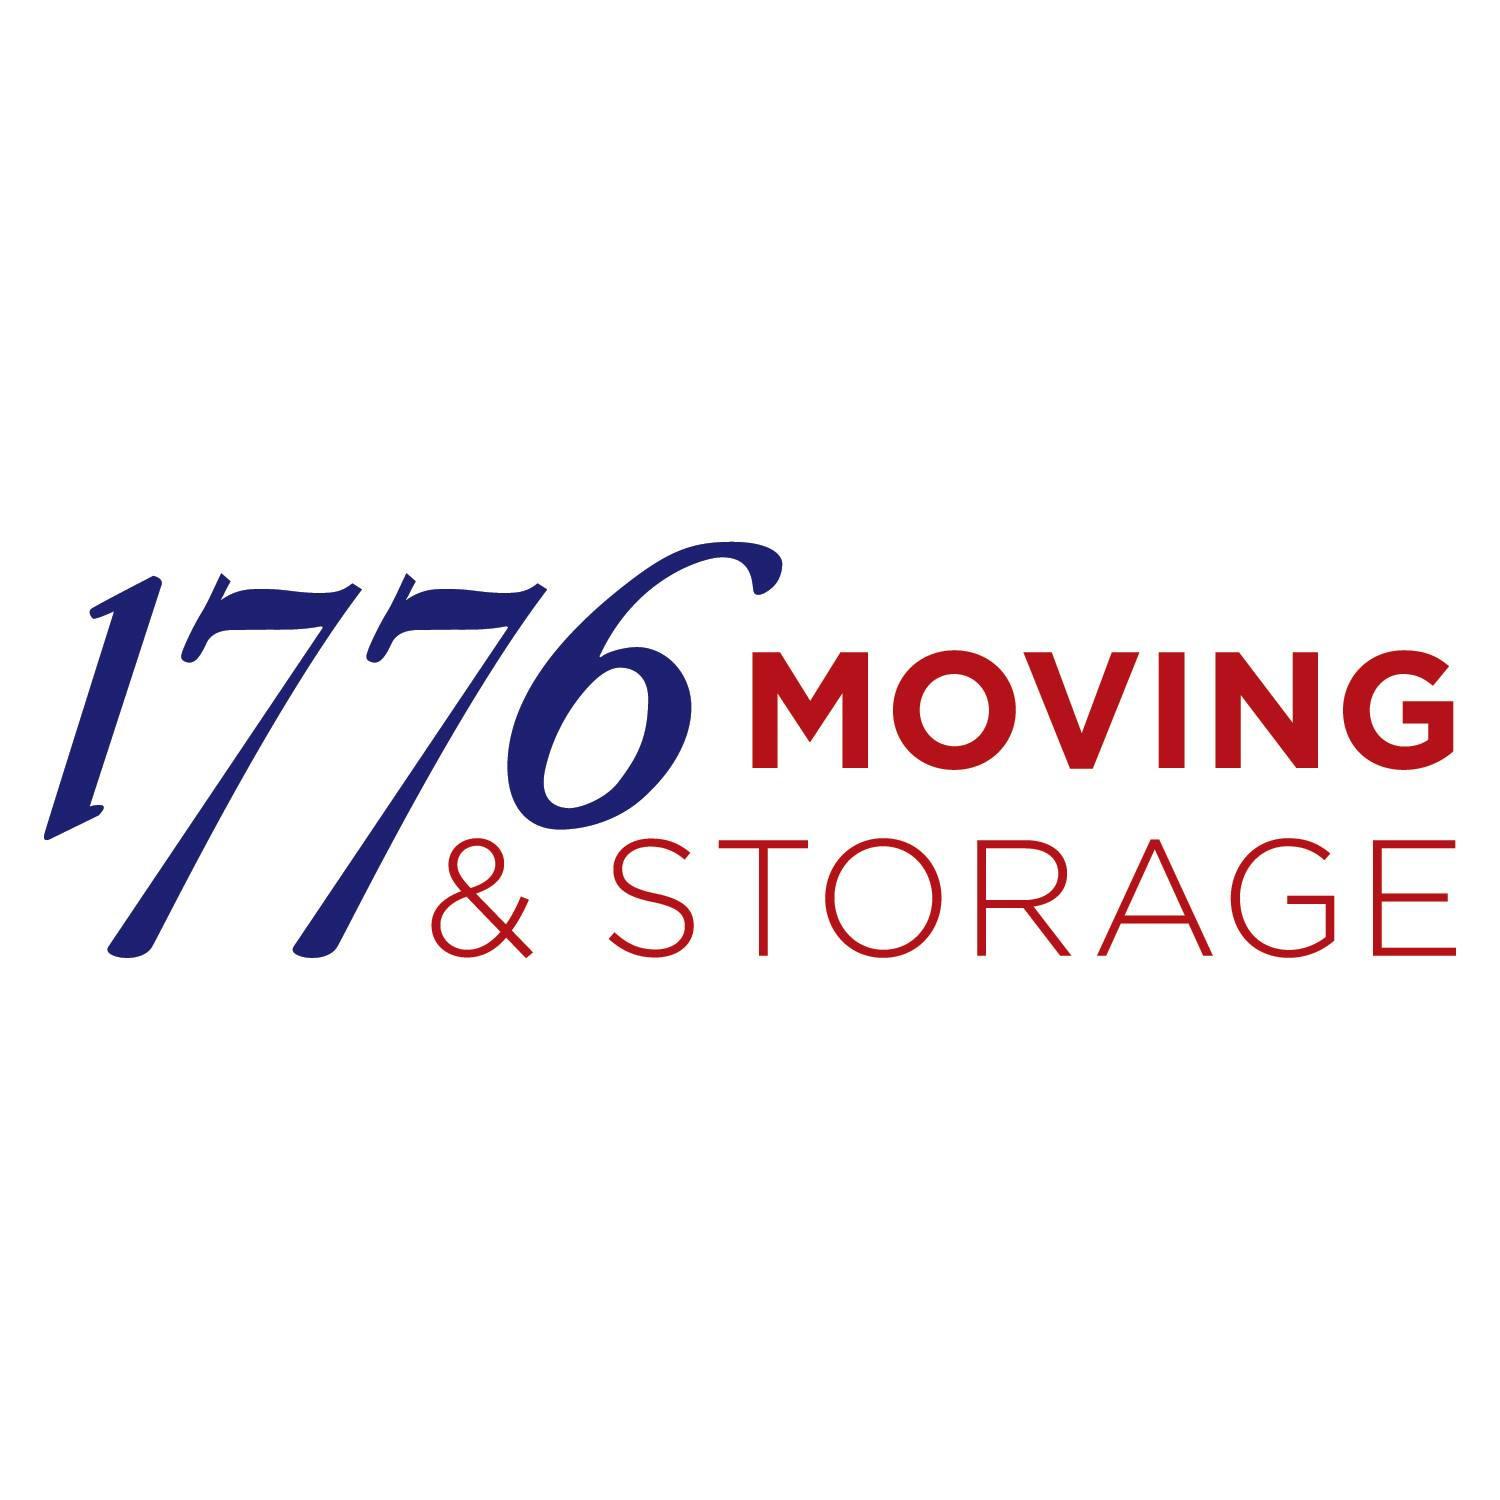 1776 Moving and Storage, Inc - Orlando, FL 32811 - (407)251-4770 | ShowMeLocal.com